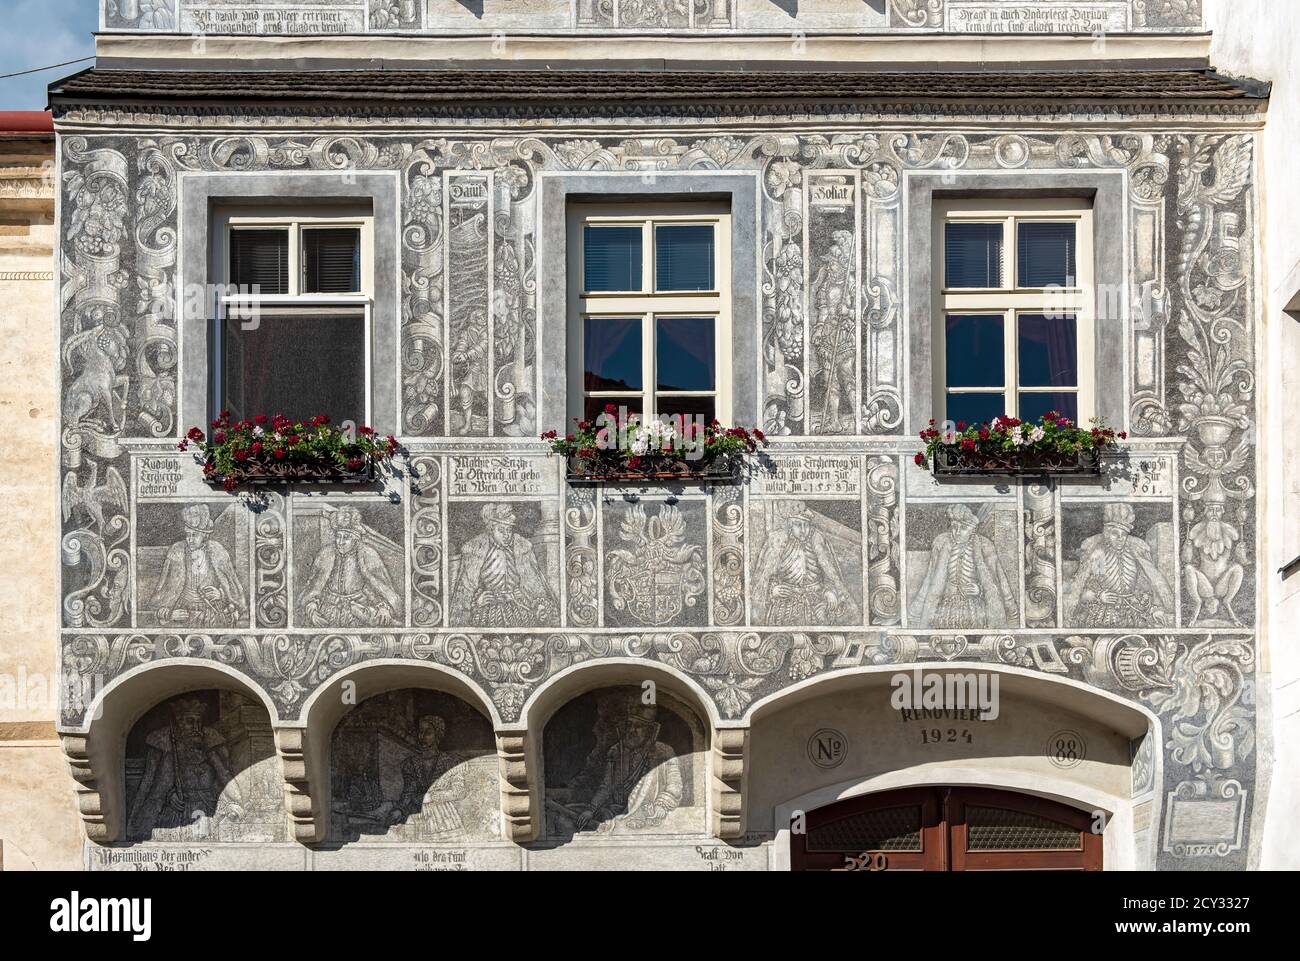 Hausnr 520 mit sgravitti aus Ovids Metamorphosen an der Fassade, Slavonice, Tschechien Stockfoto